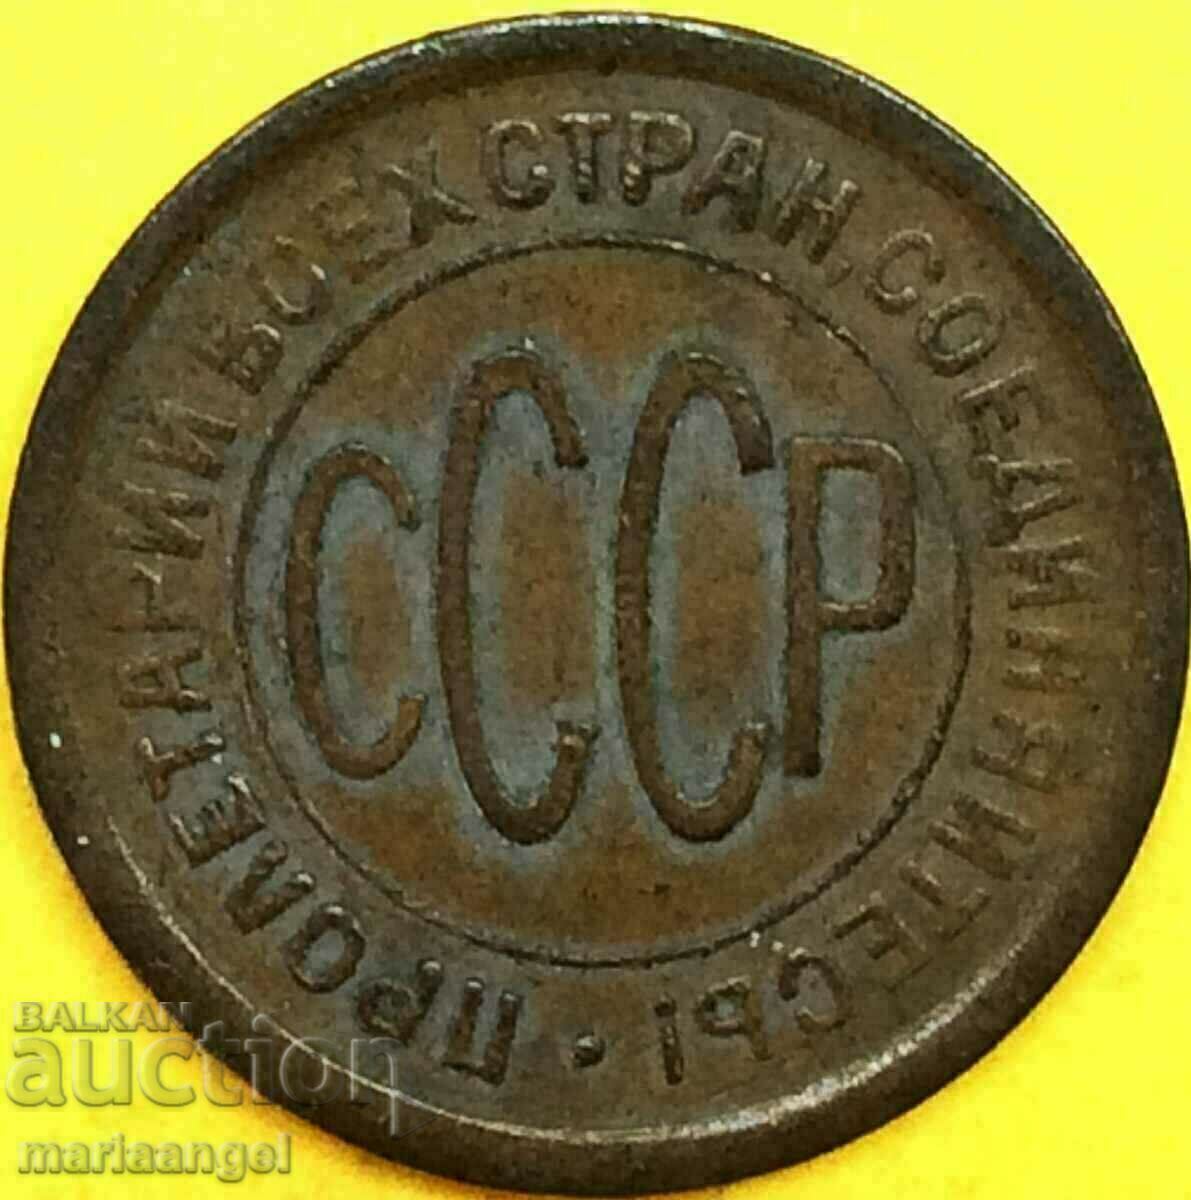 1/2 half kopeck 1925 USSR Russia - quite rare